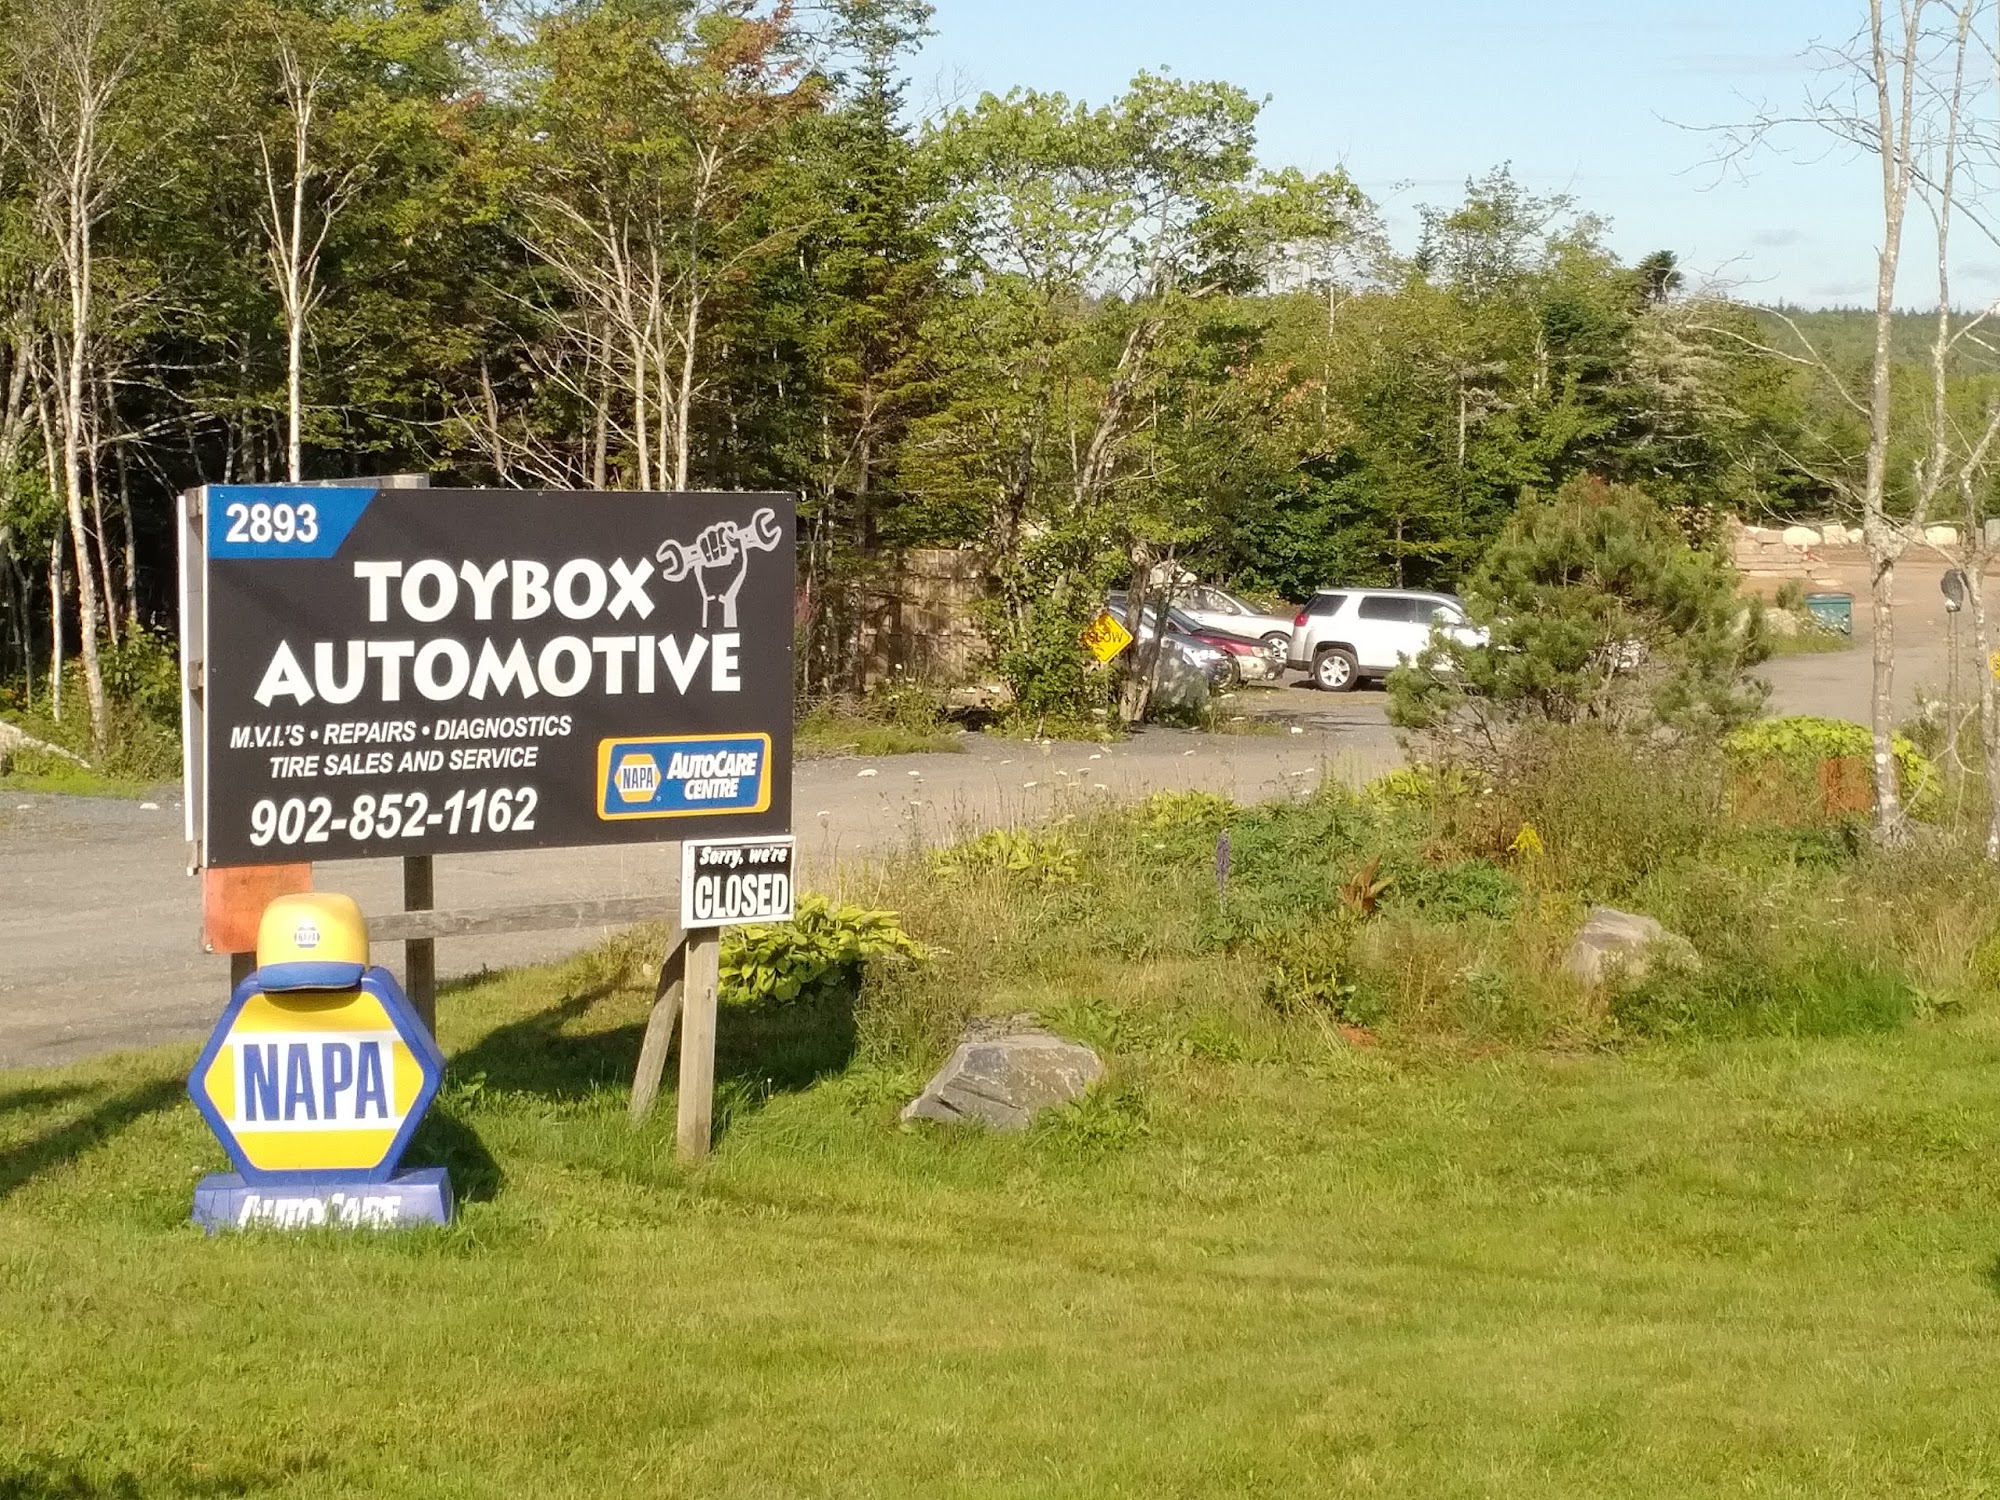 TOYBOX AUTOMOTIVE LTD 2893 Prospect Rd, Whites Lake Nova Scotia B3T 1V8